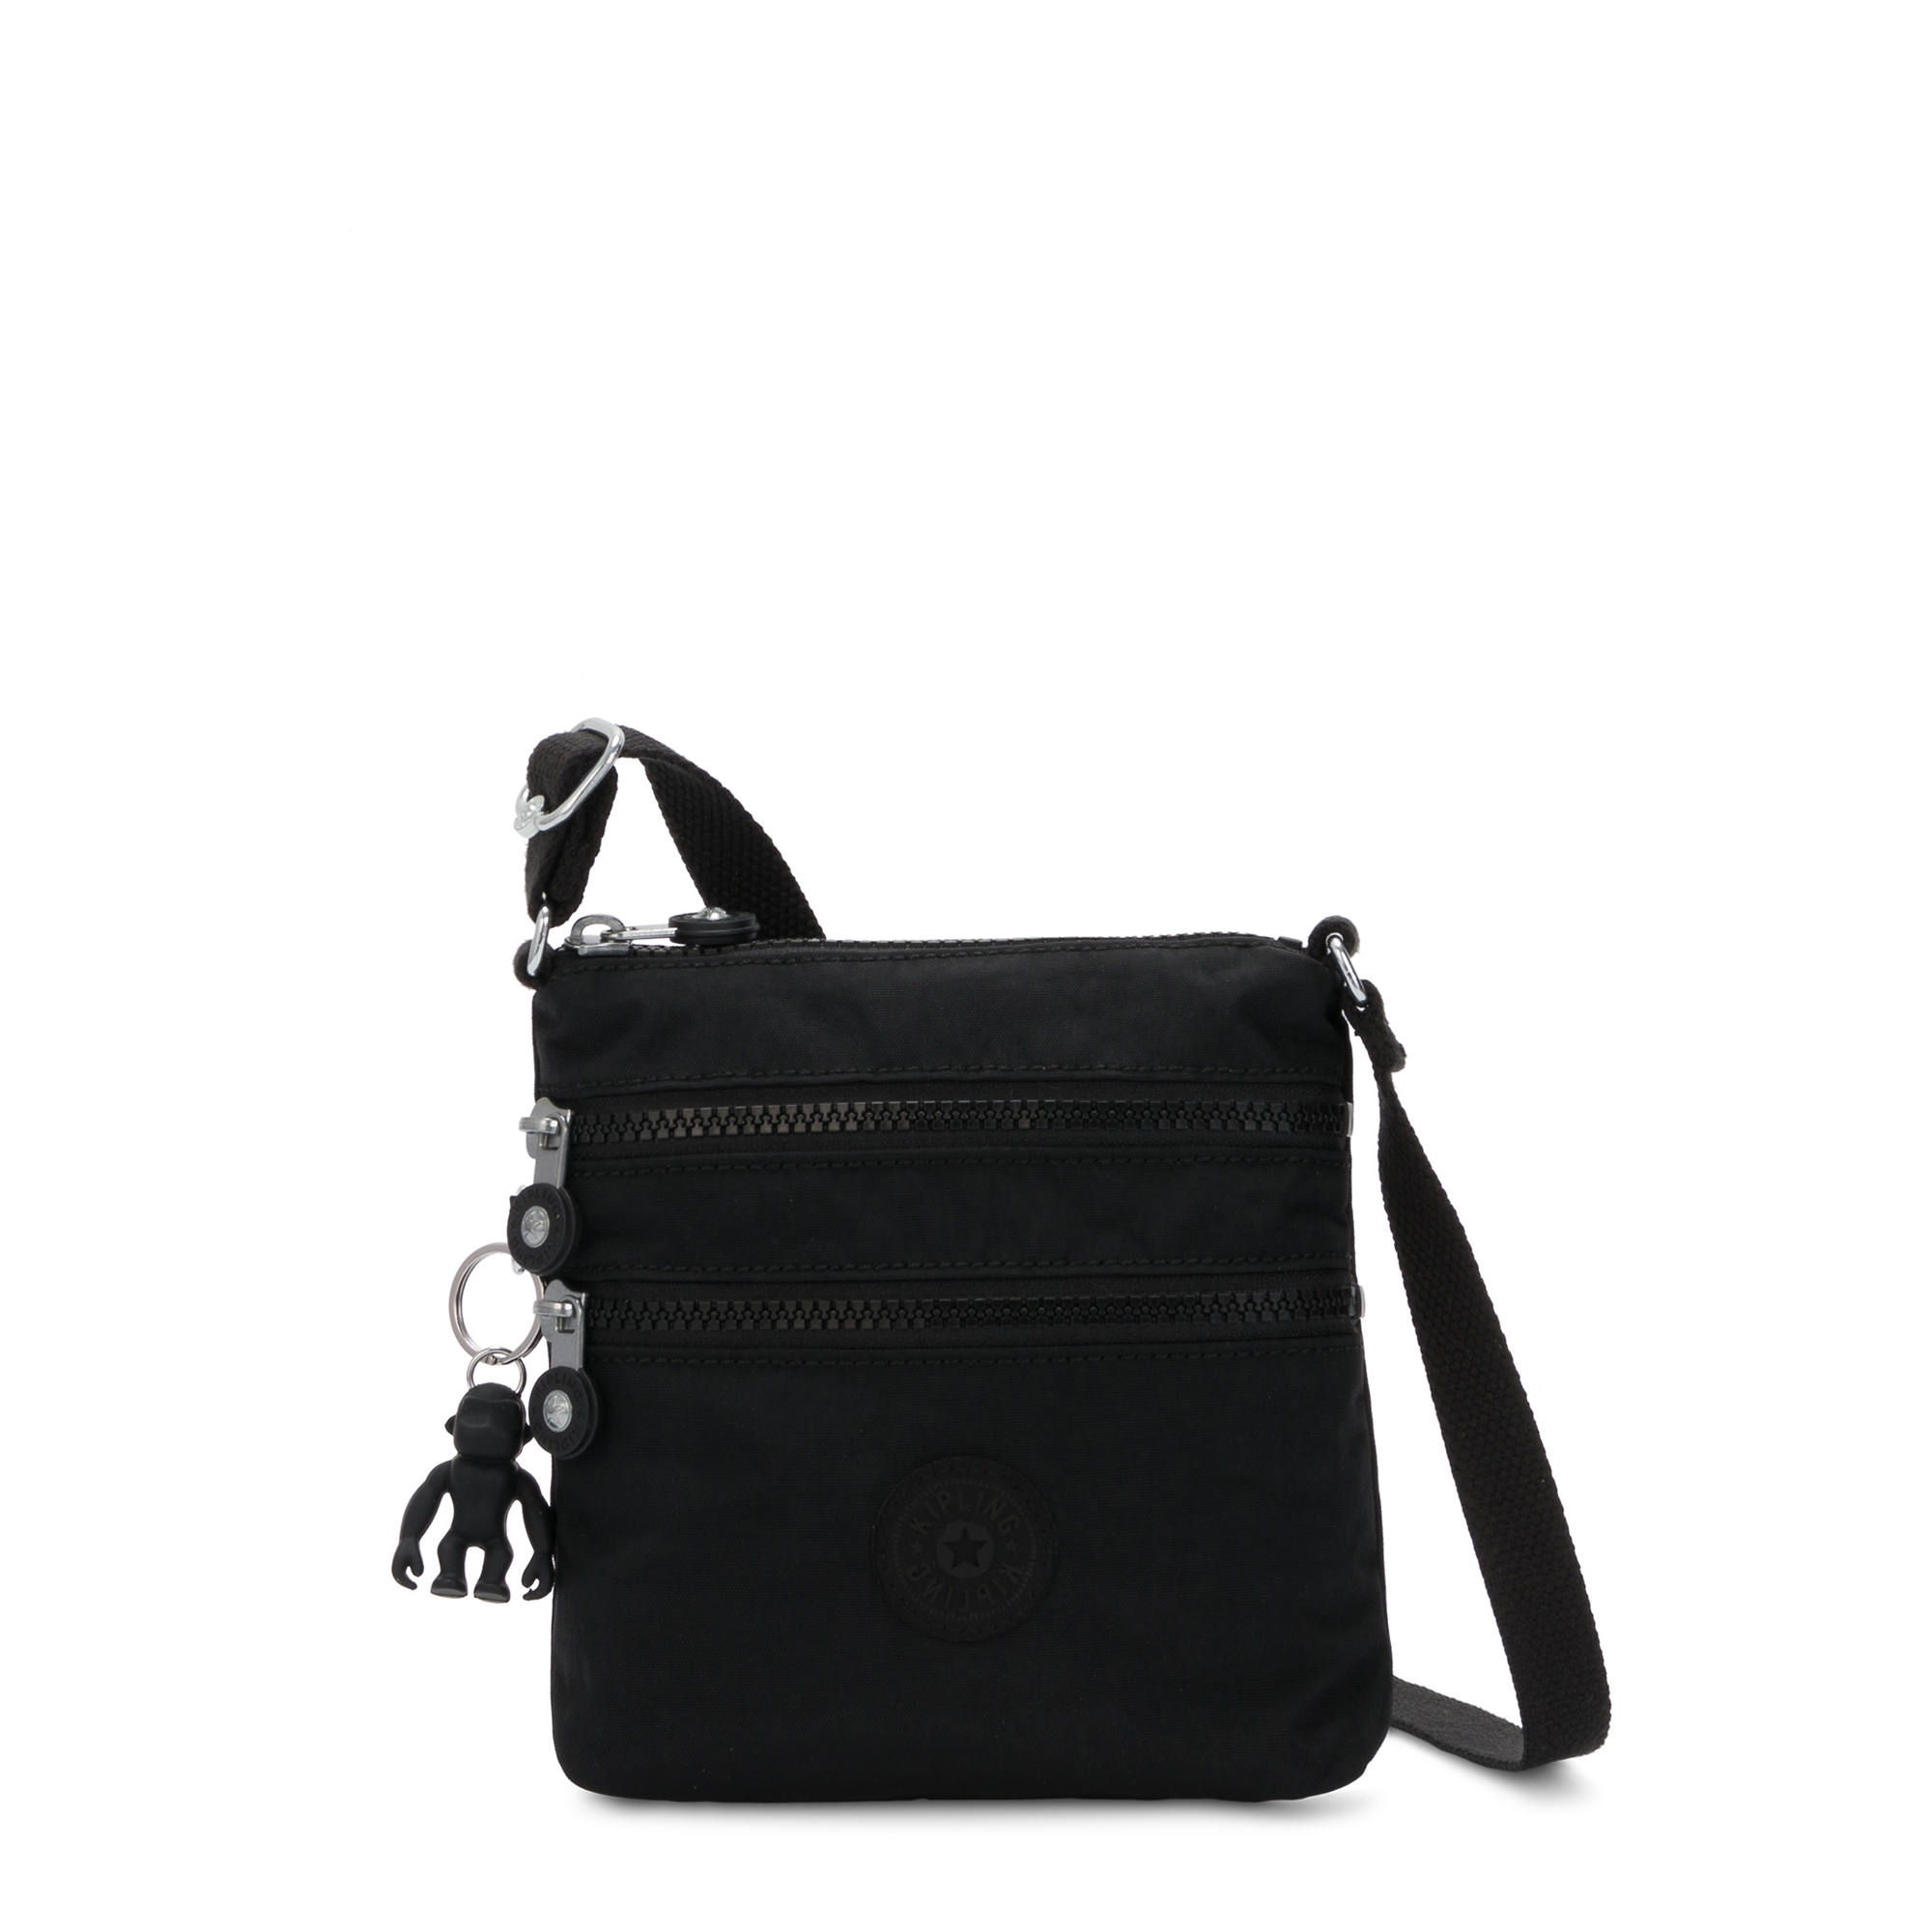 Handbag With Adjustable Strap